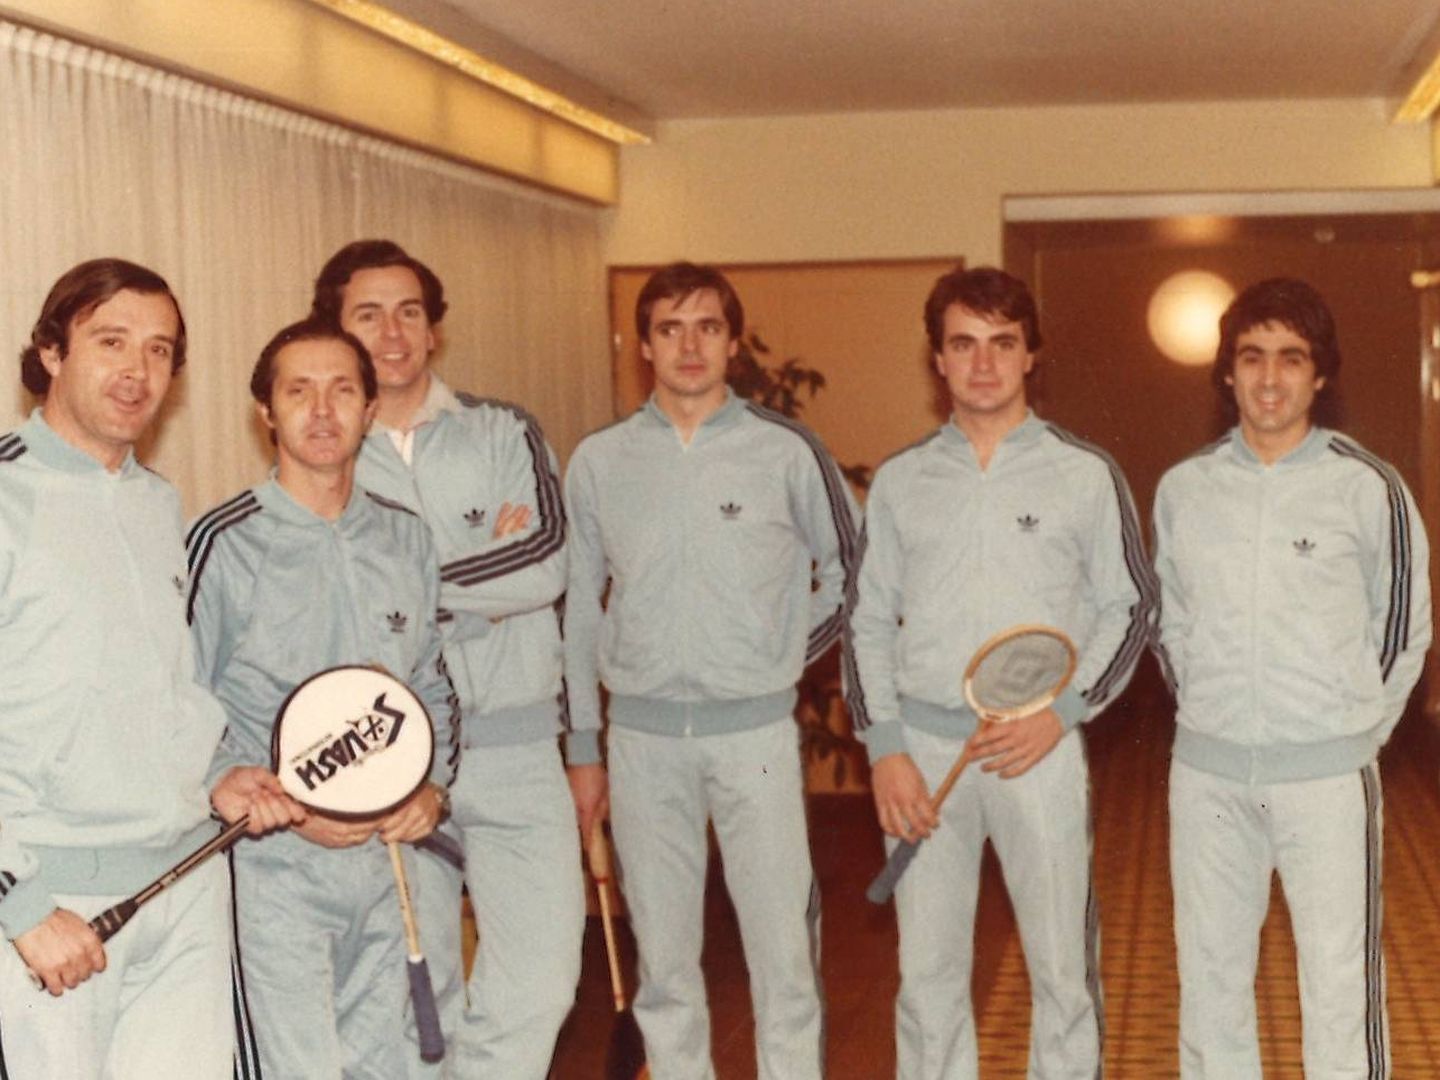 Uno de los primeros equipos españoles de squash, con Carlos Sainz entre sus integrantes (segundo por la derecha). (Foto cedida por Concha Galatas)